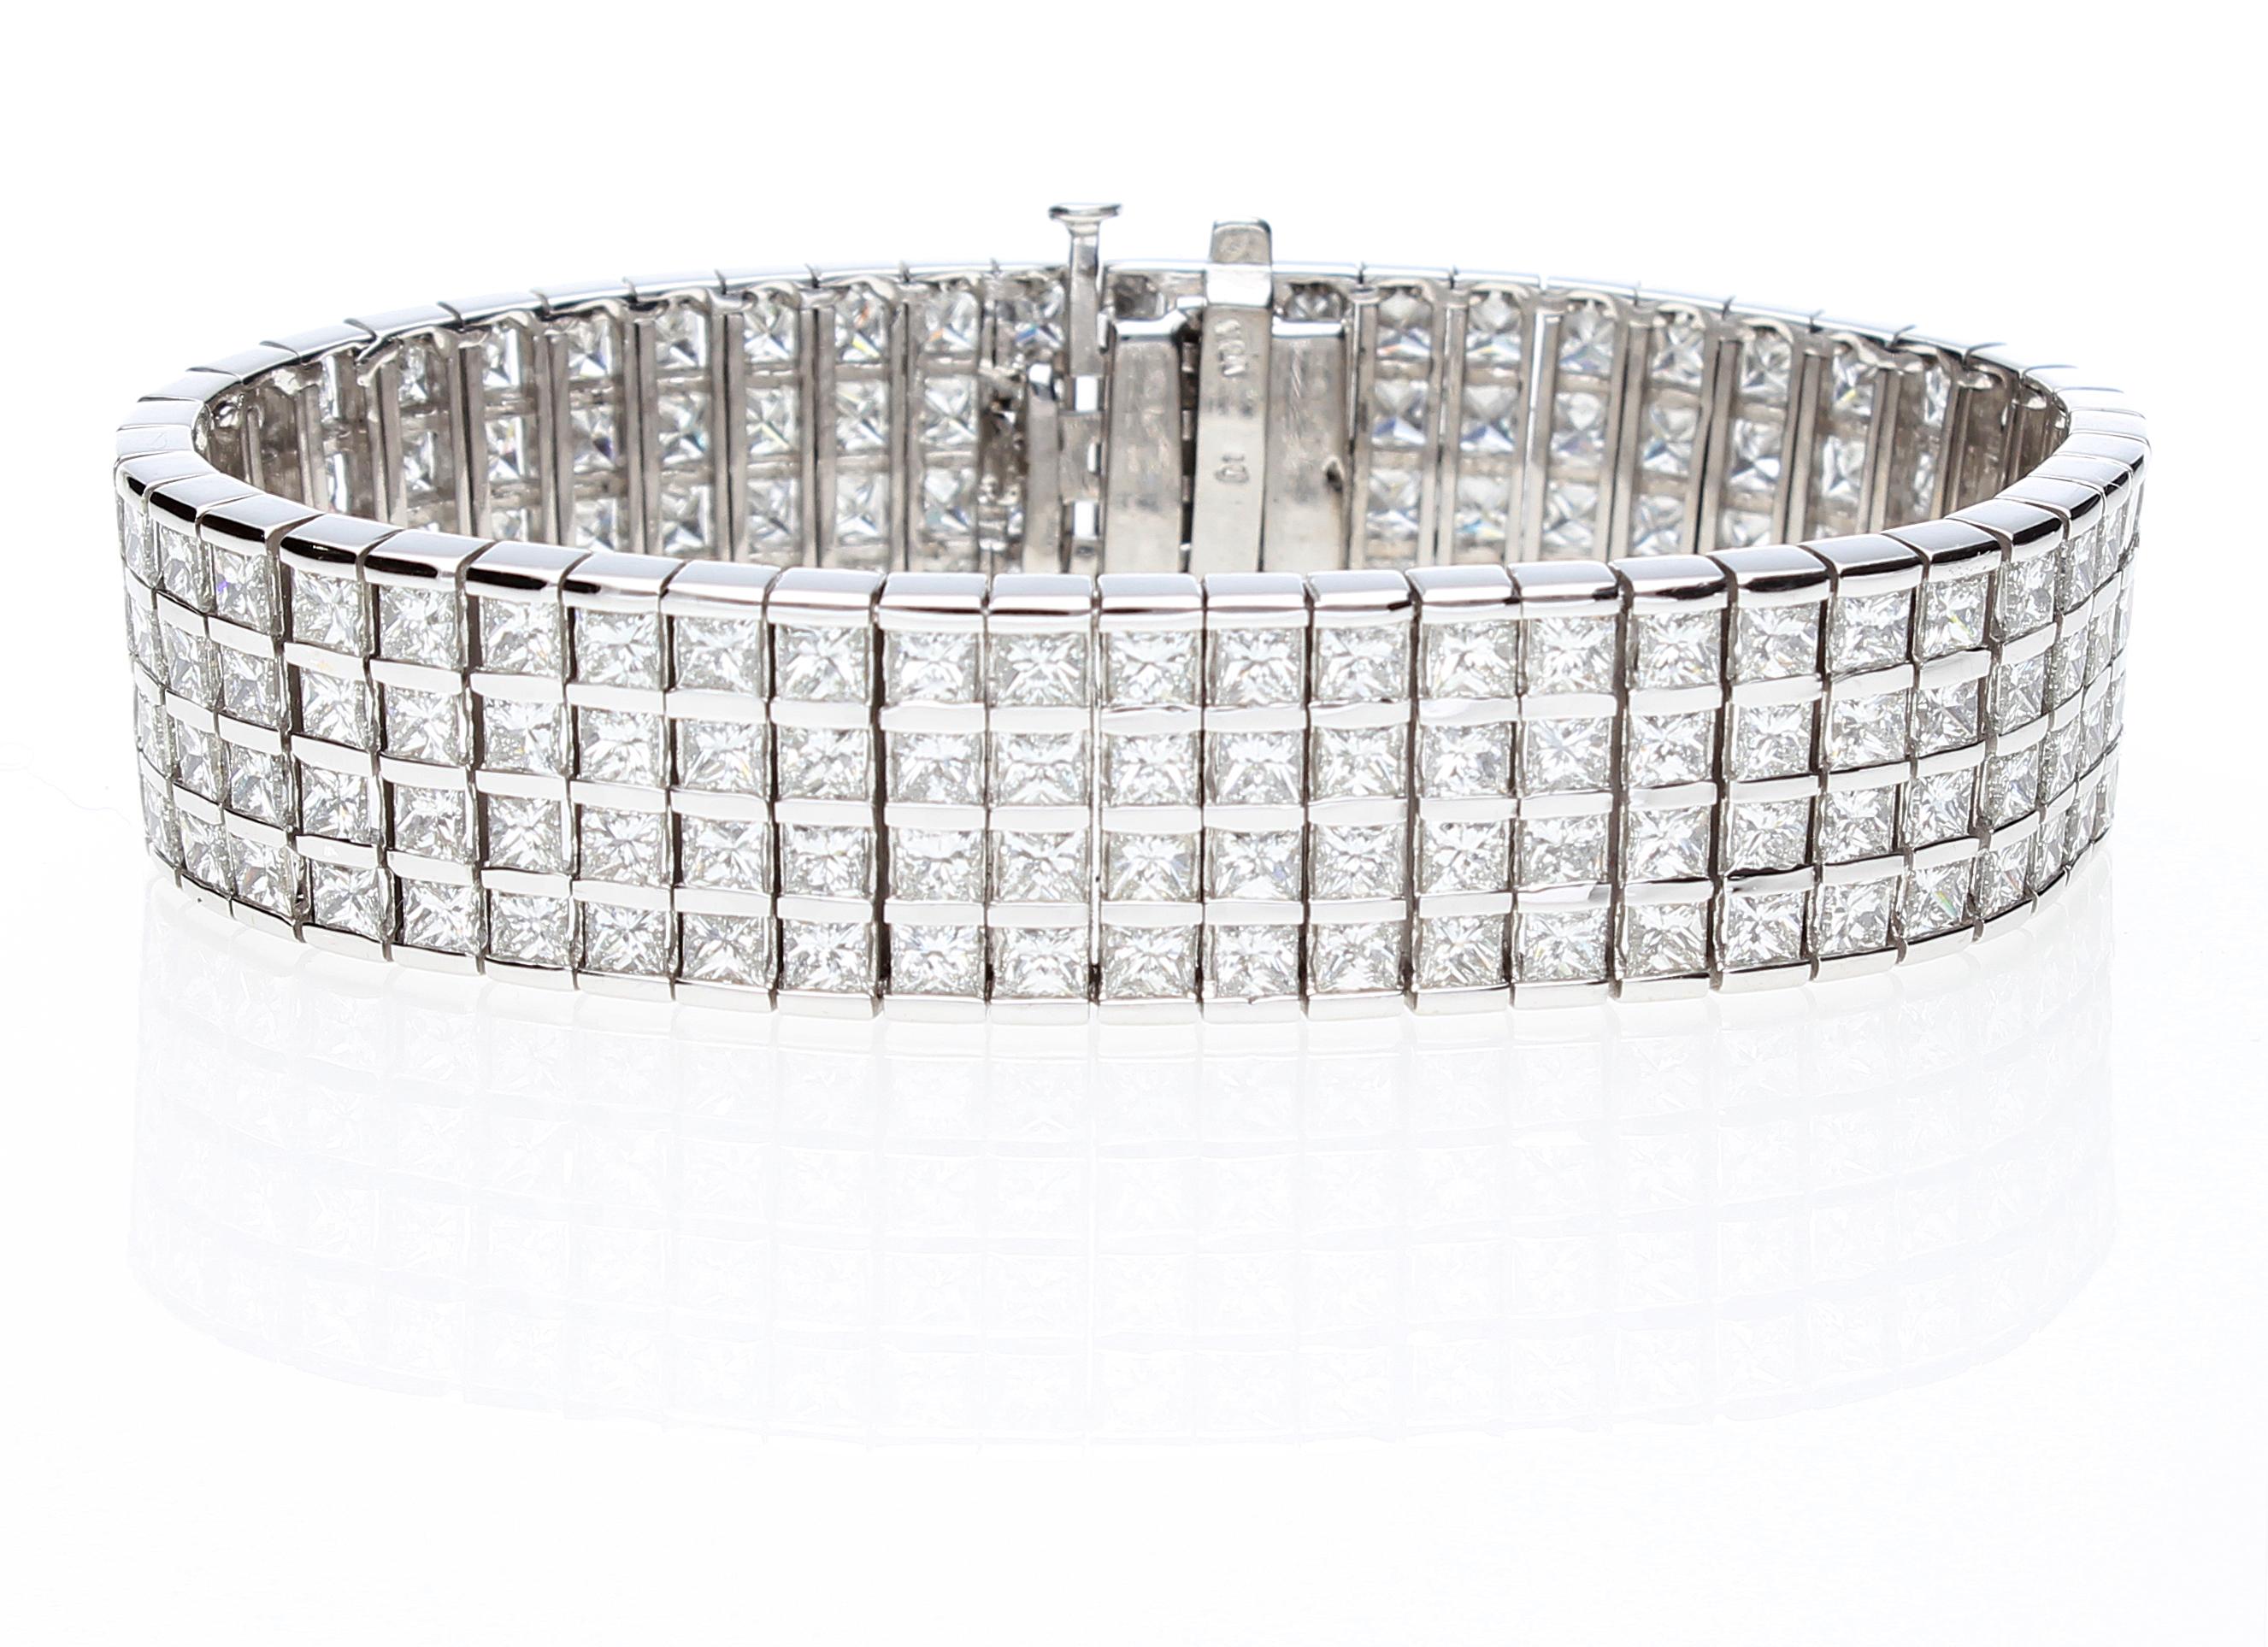 Halbsteifes Armband mit 204 Diamanten im Prinzessschliff, Gesamtgewicht ca. 20,00 ct.
Das Armband besteht aus 4 Reihen von Diamanten im Prinzessinnenschliff, die jeweils zwischen zwei Weißgoldschienen eingefasst sind. 
Das Armband hat einen